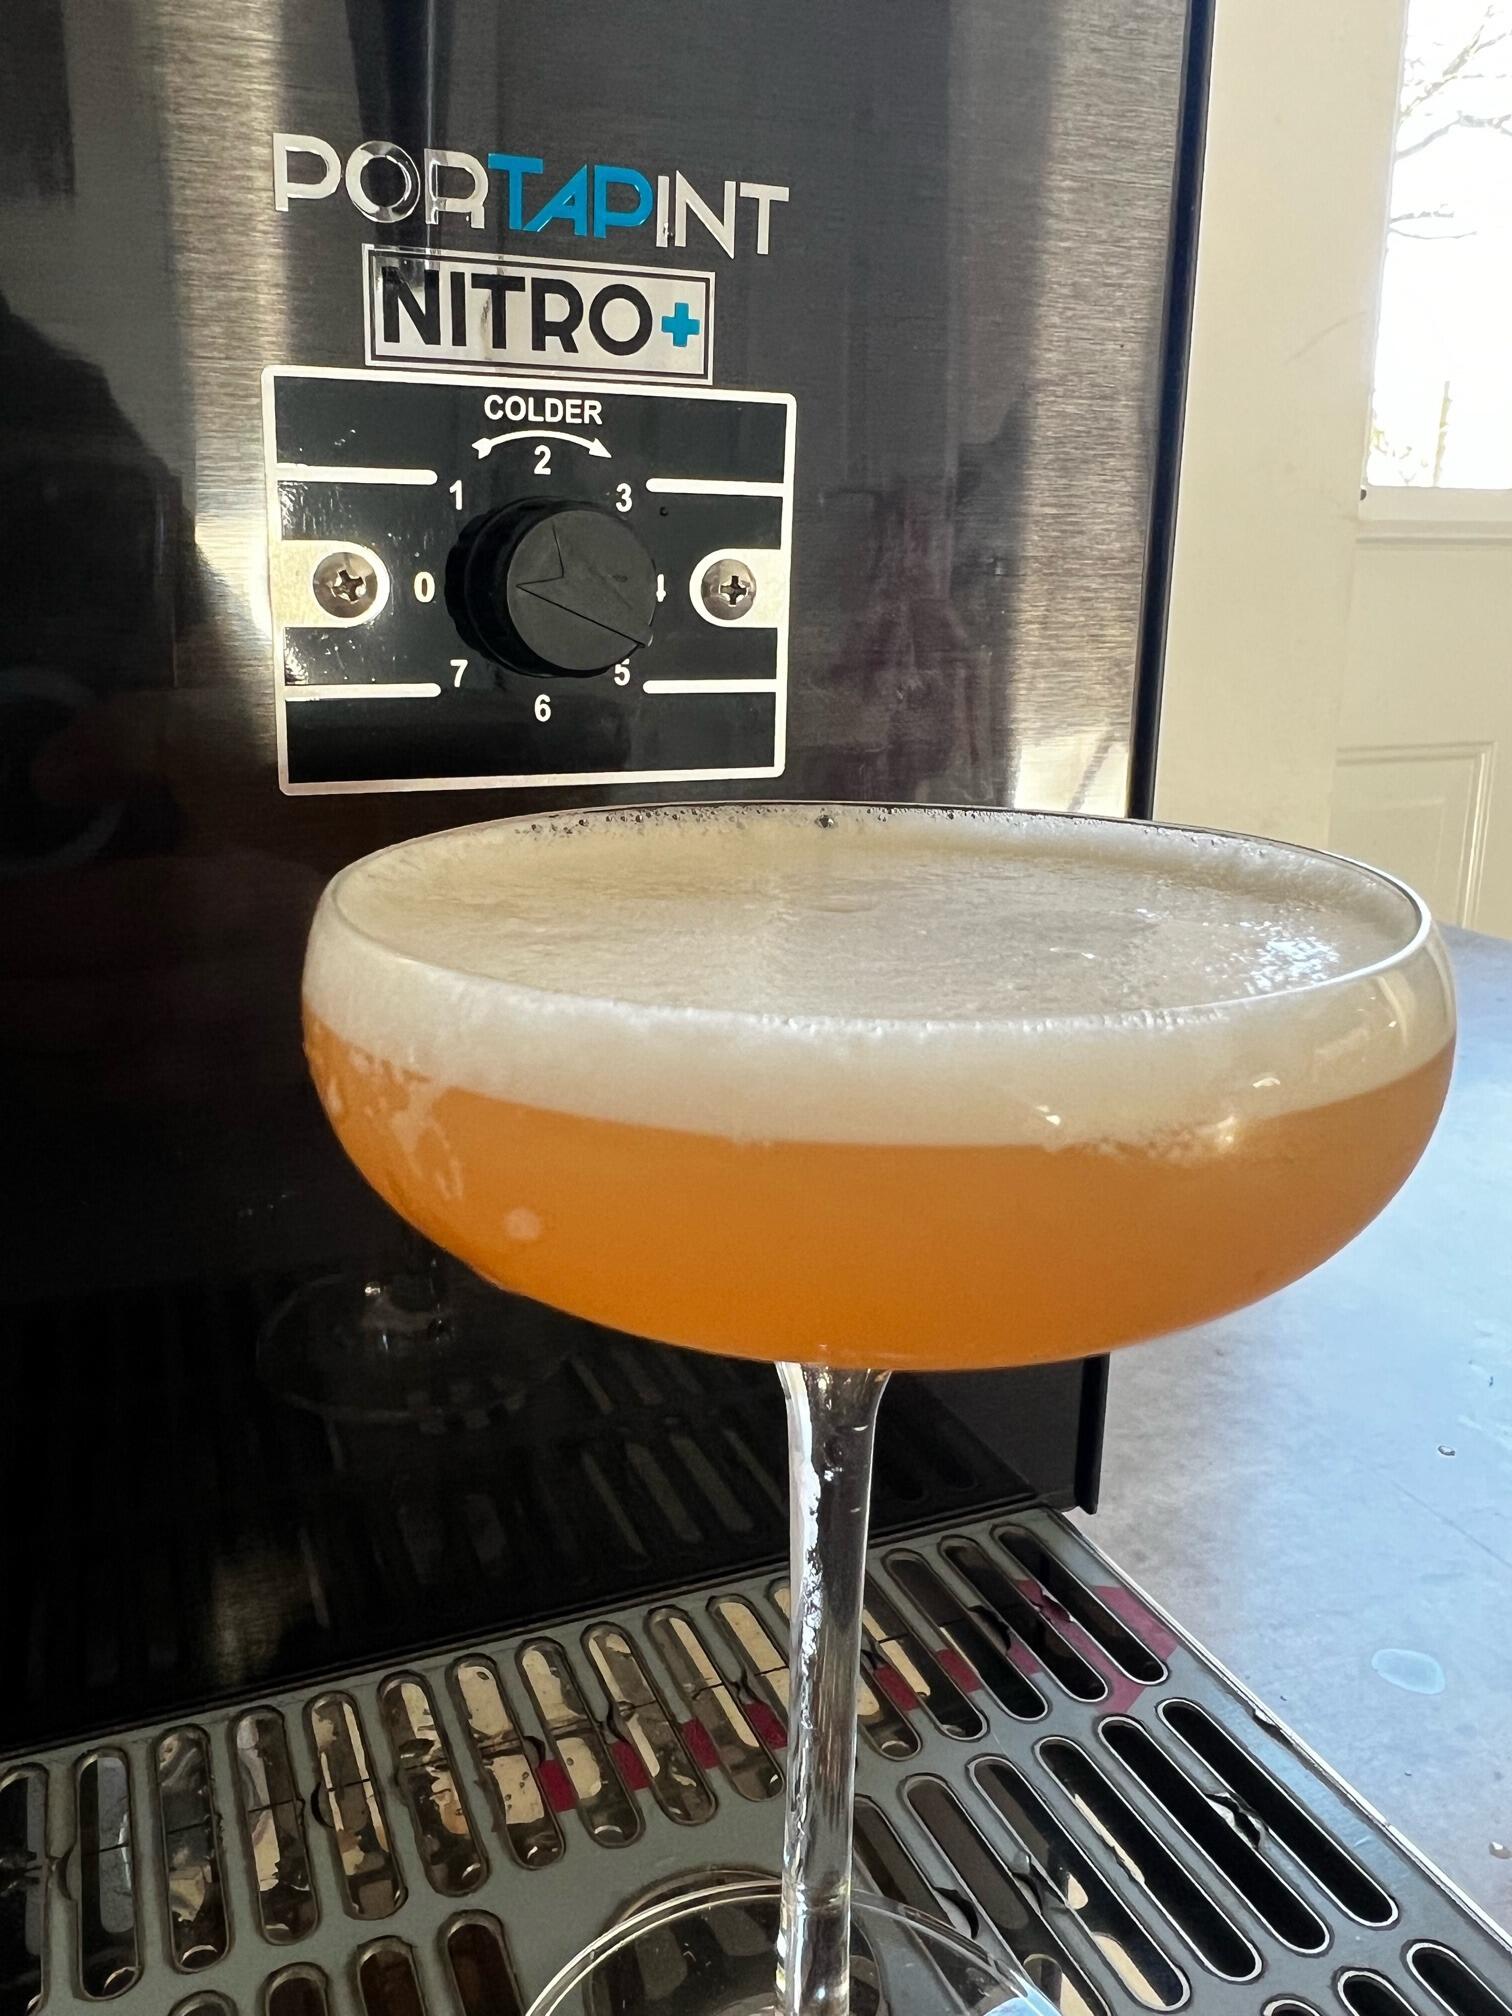 Draught cocktail dispenser Portapint